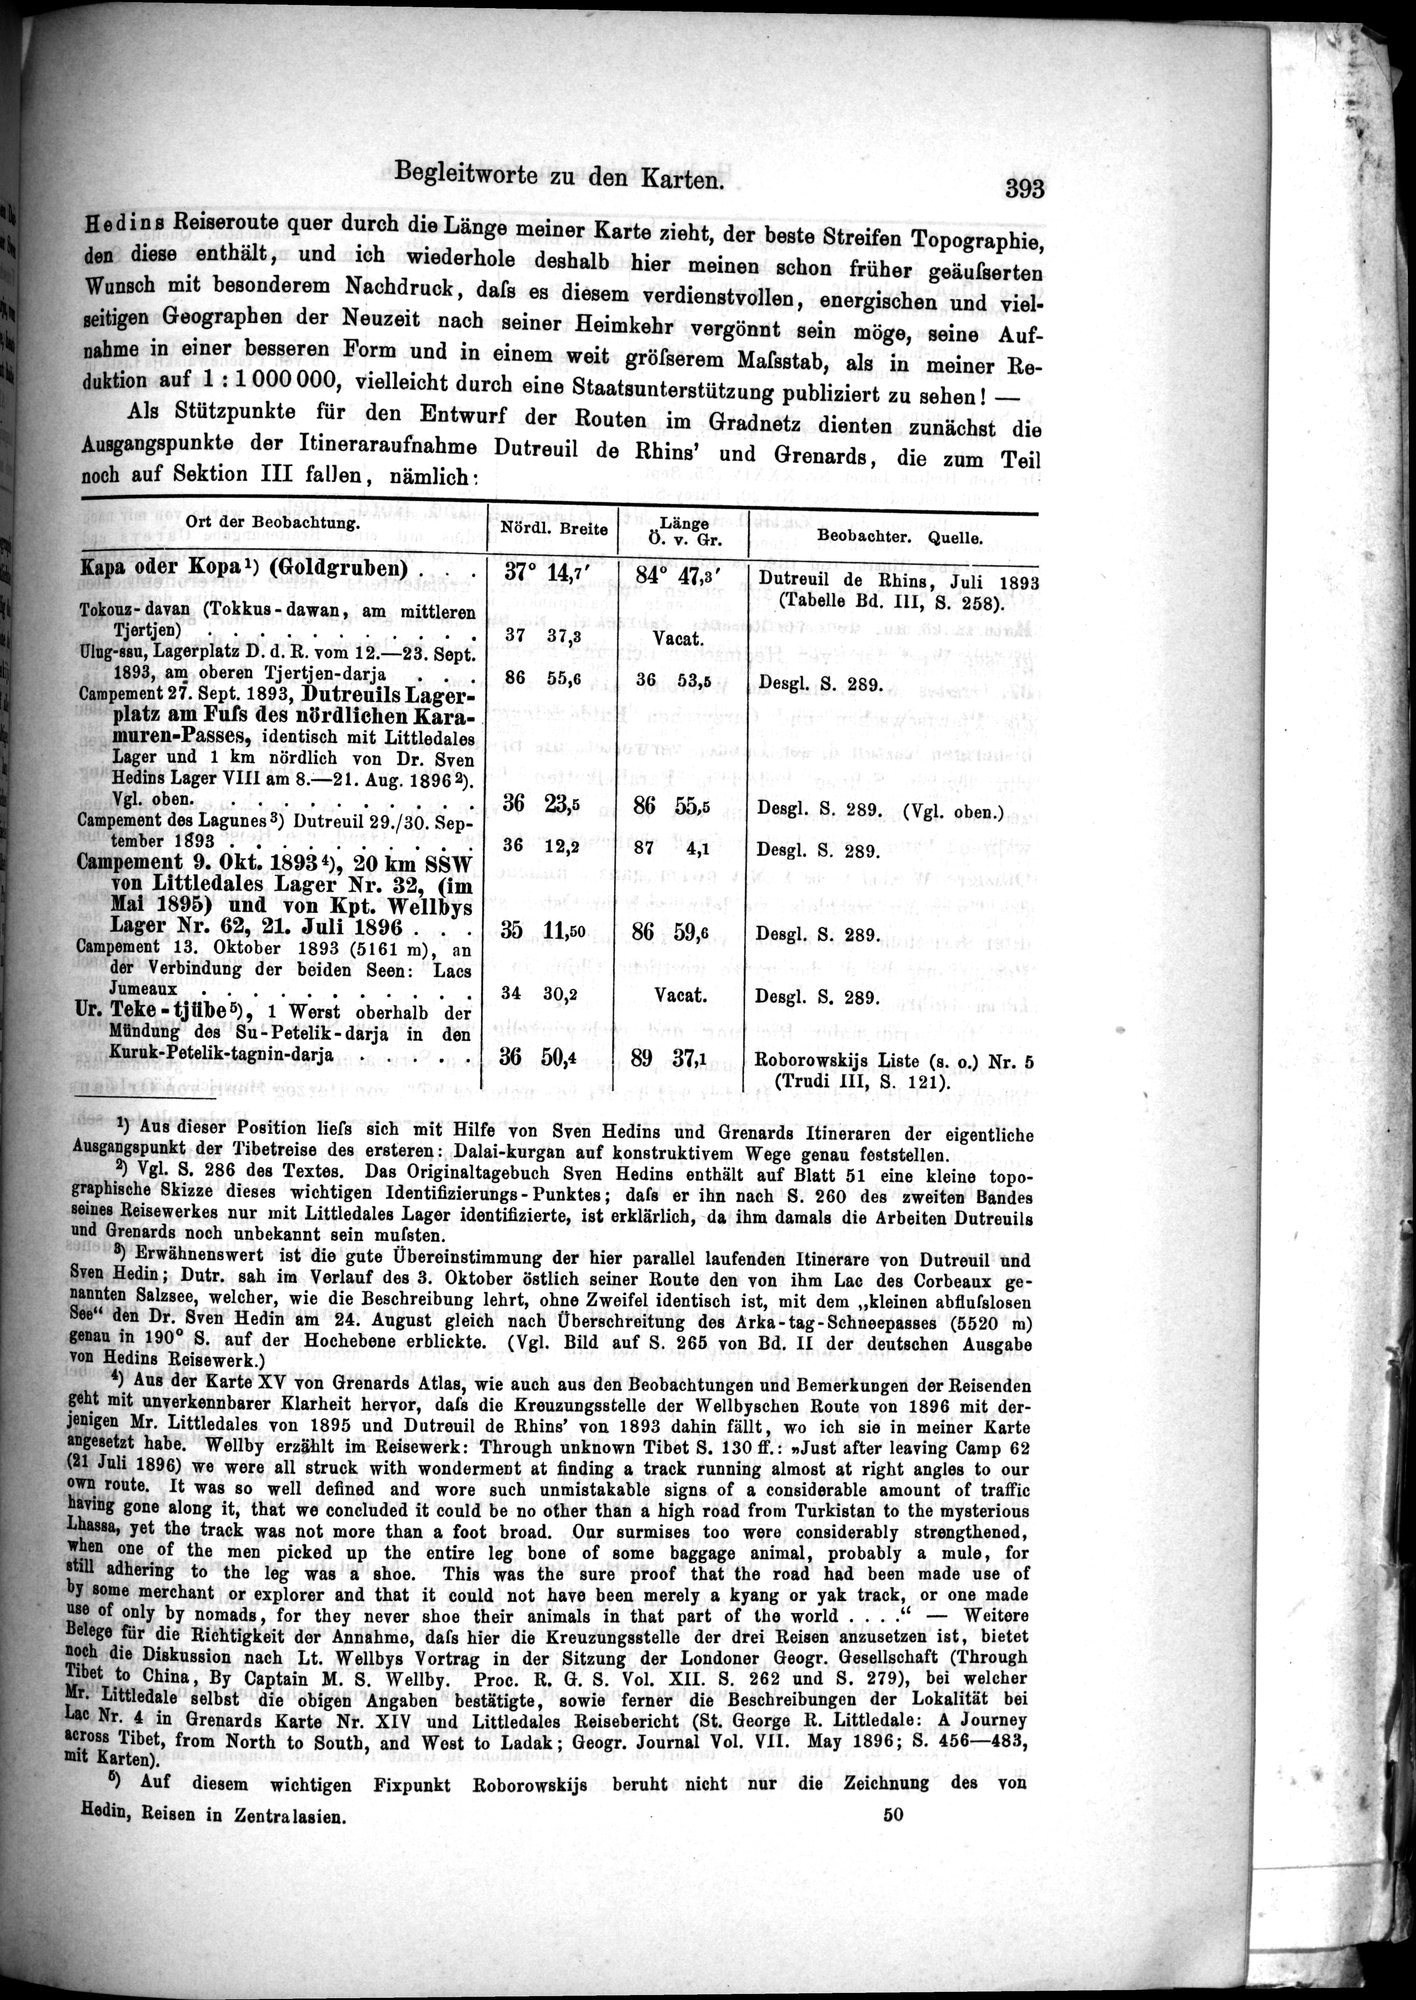 Die Geographische-Wissenschaftlichen Ergebnisse meiner Reisen in Zentralasien, 1894-1897 : vol.1 / Page 405 (Grayscale High Resolution Image)